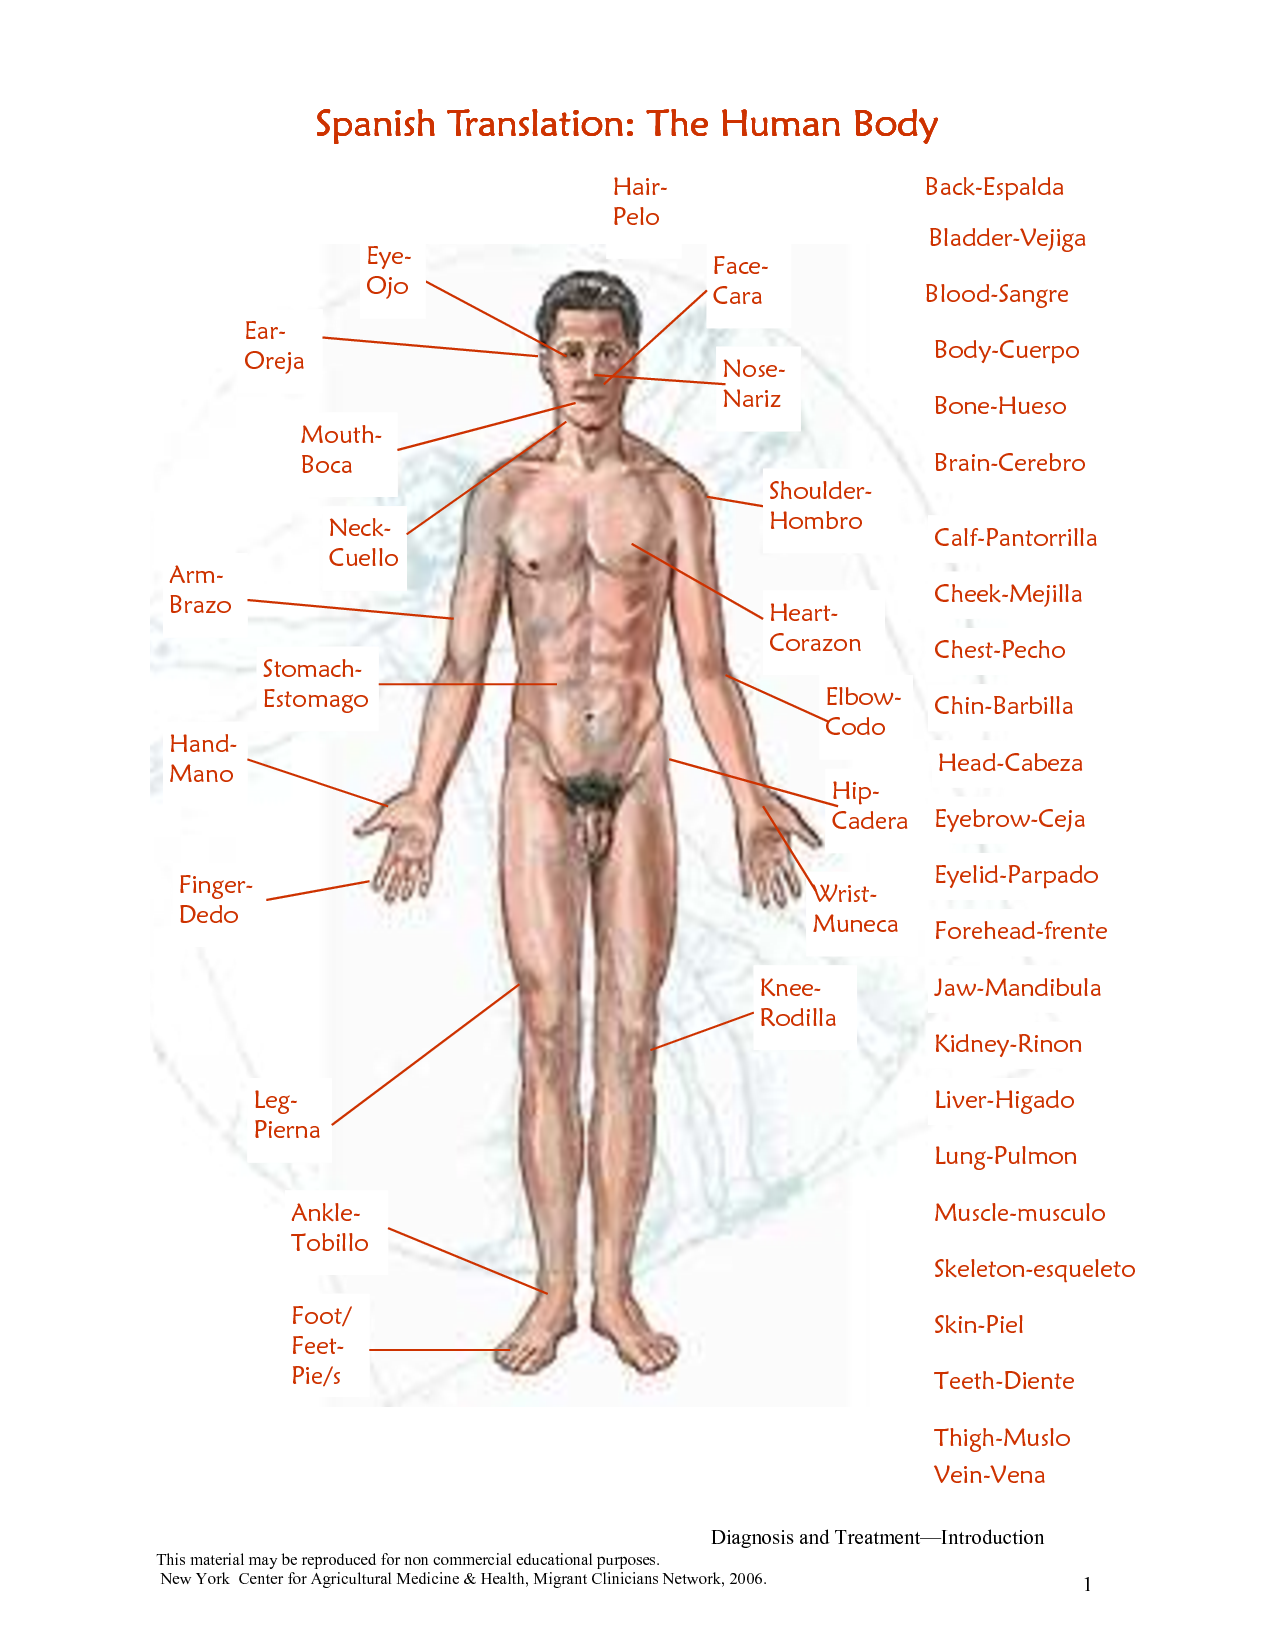 Human Body Chart Image